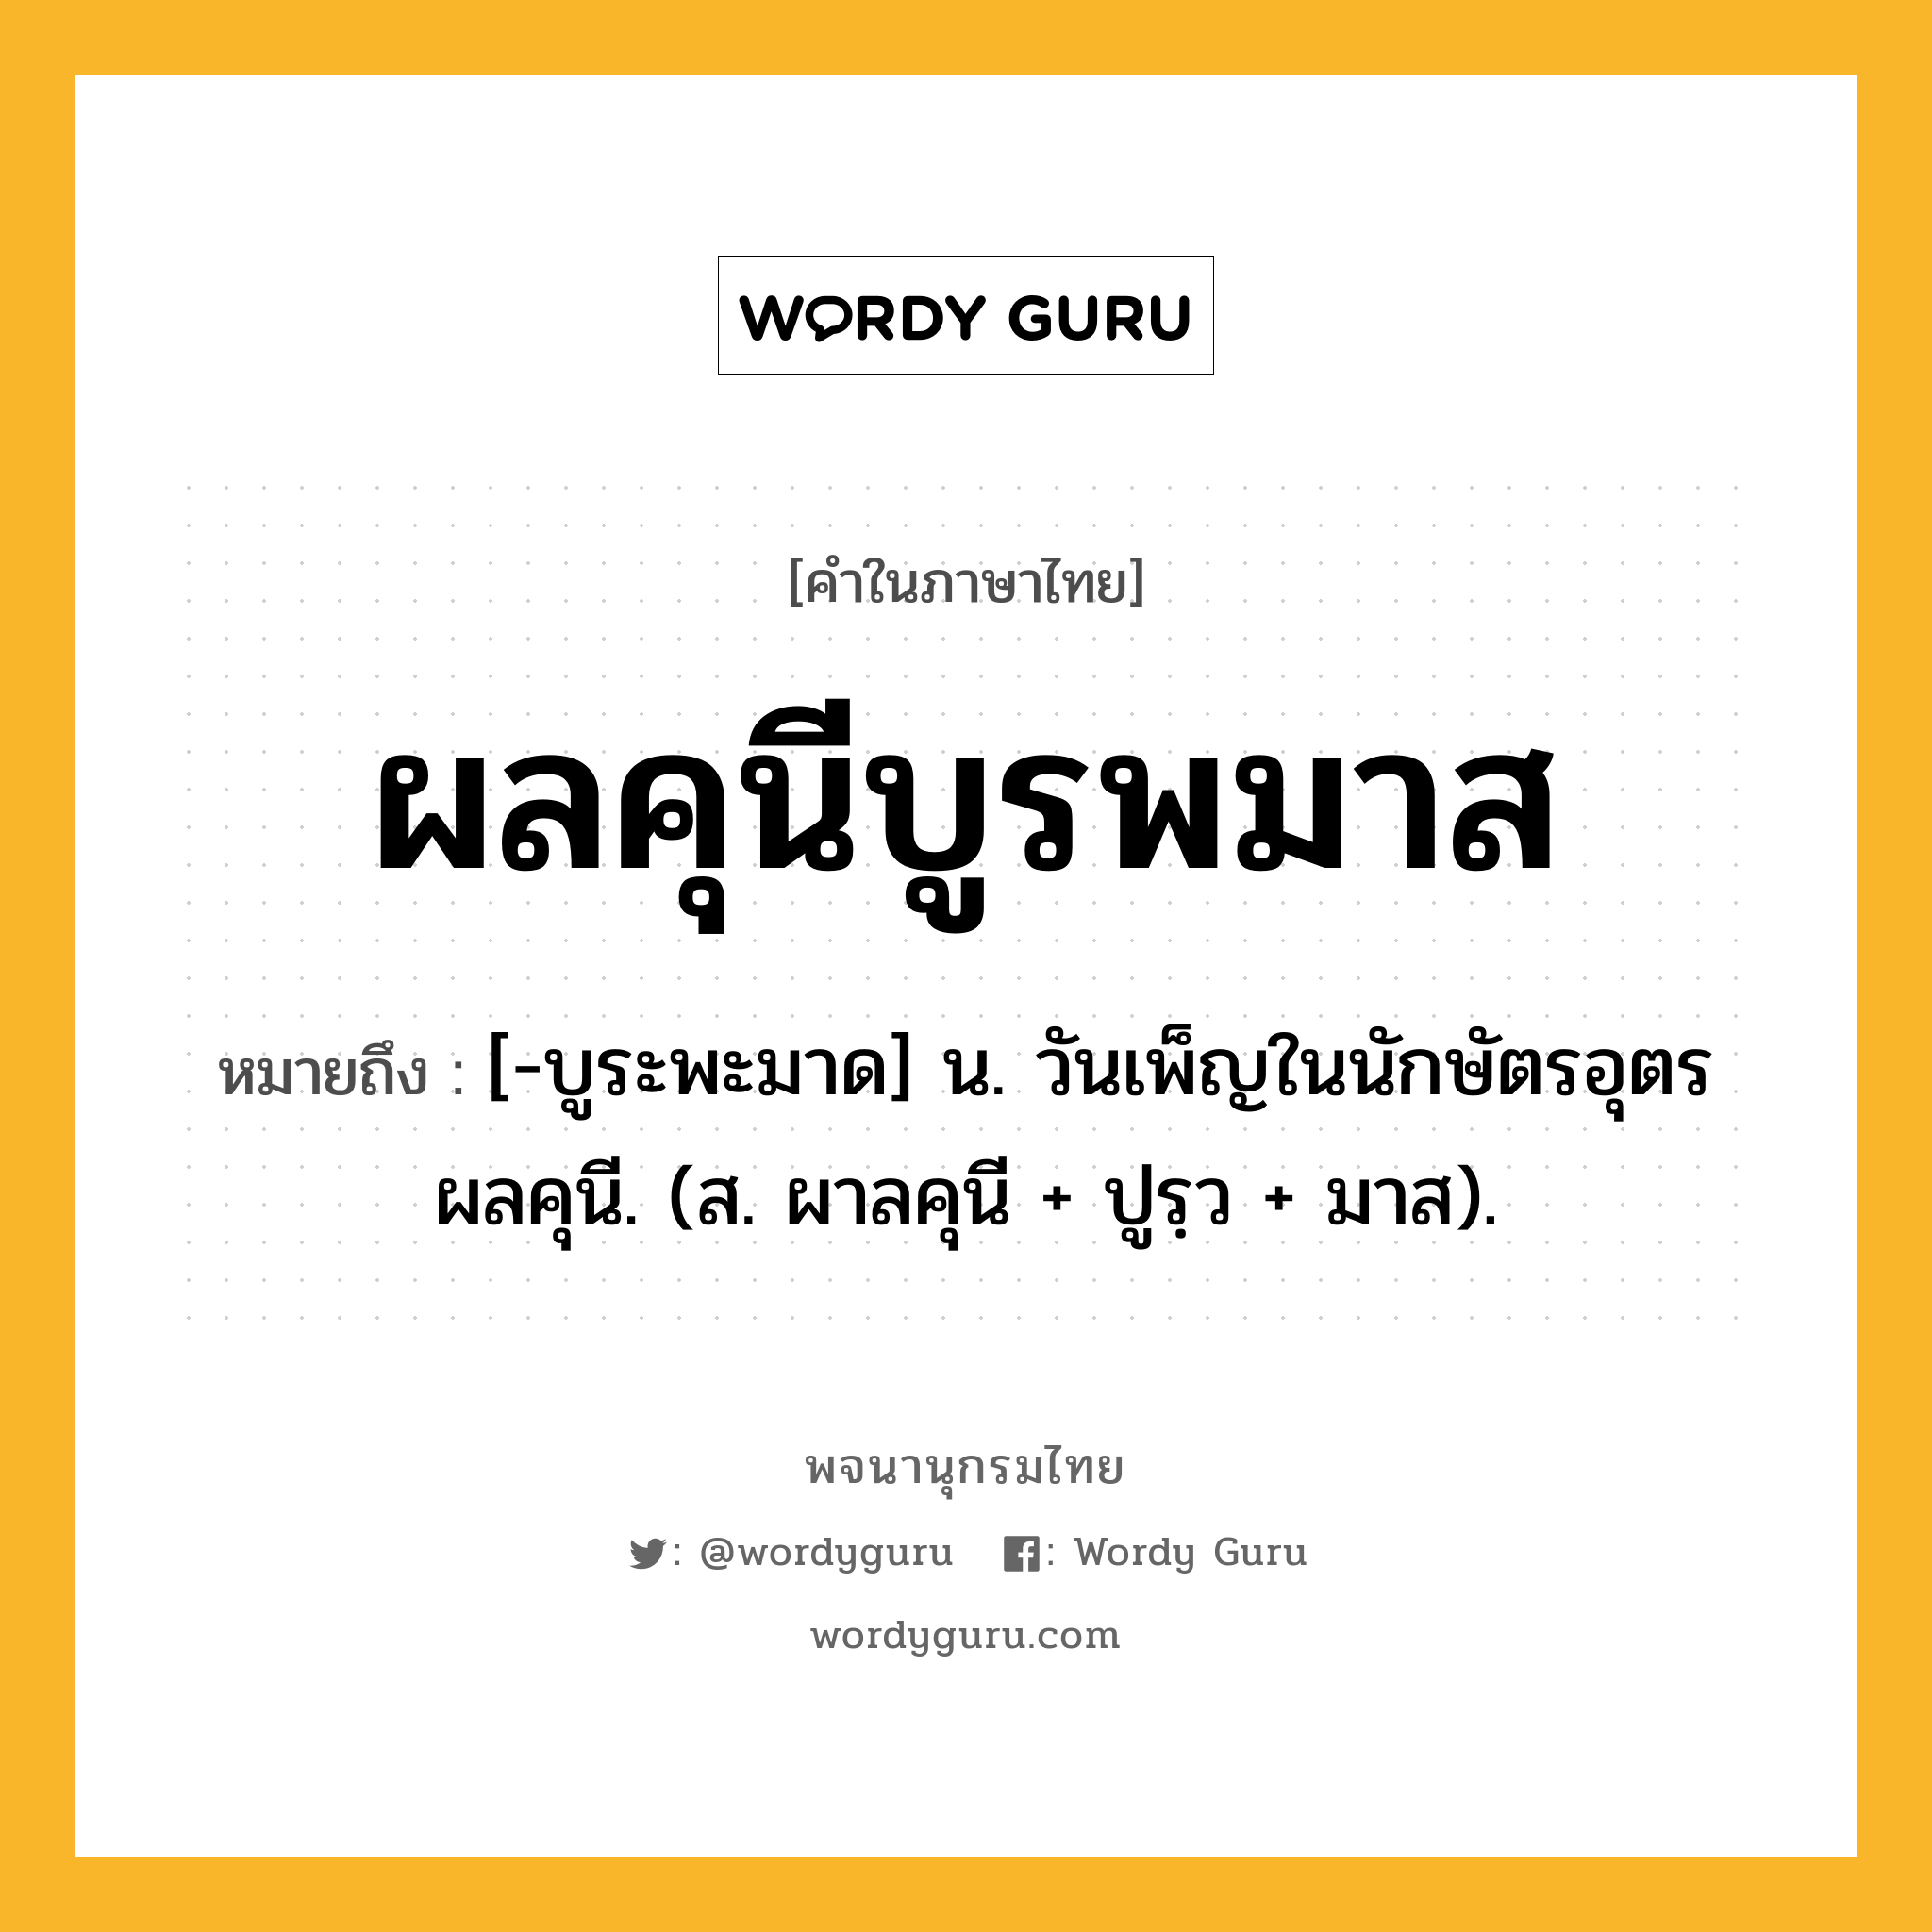 ผลคุนีบูรพมาส ความหมาย หมายถึงอะไร?, คำในภาษาไทย ผลคุนีบูรพมาส หมายถึง [-บูระพะมาด] น. วันเพ็ญในนักษัตรอุตรผลคุนี. (ส. ผาลคุนี + ปูรฺว + มาส).